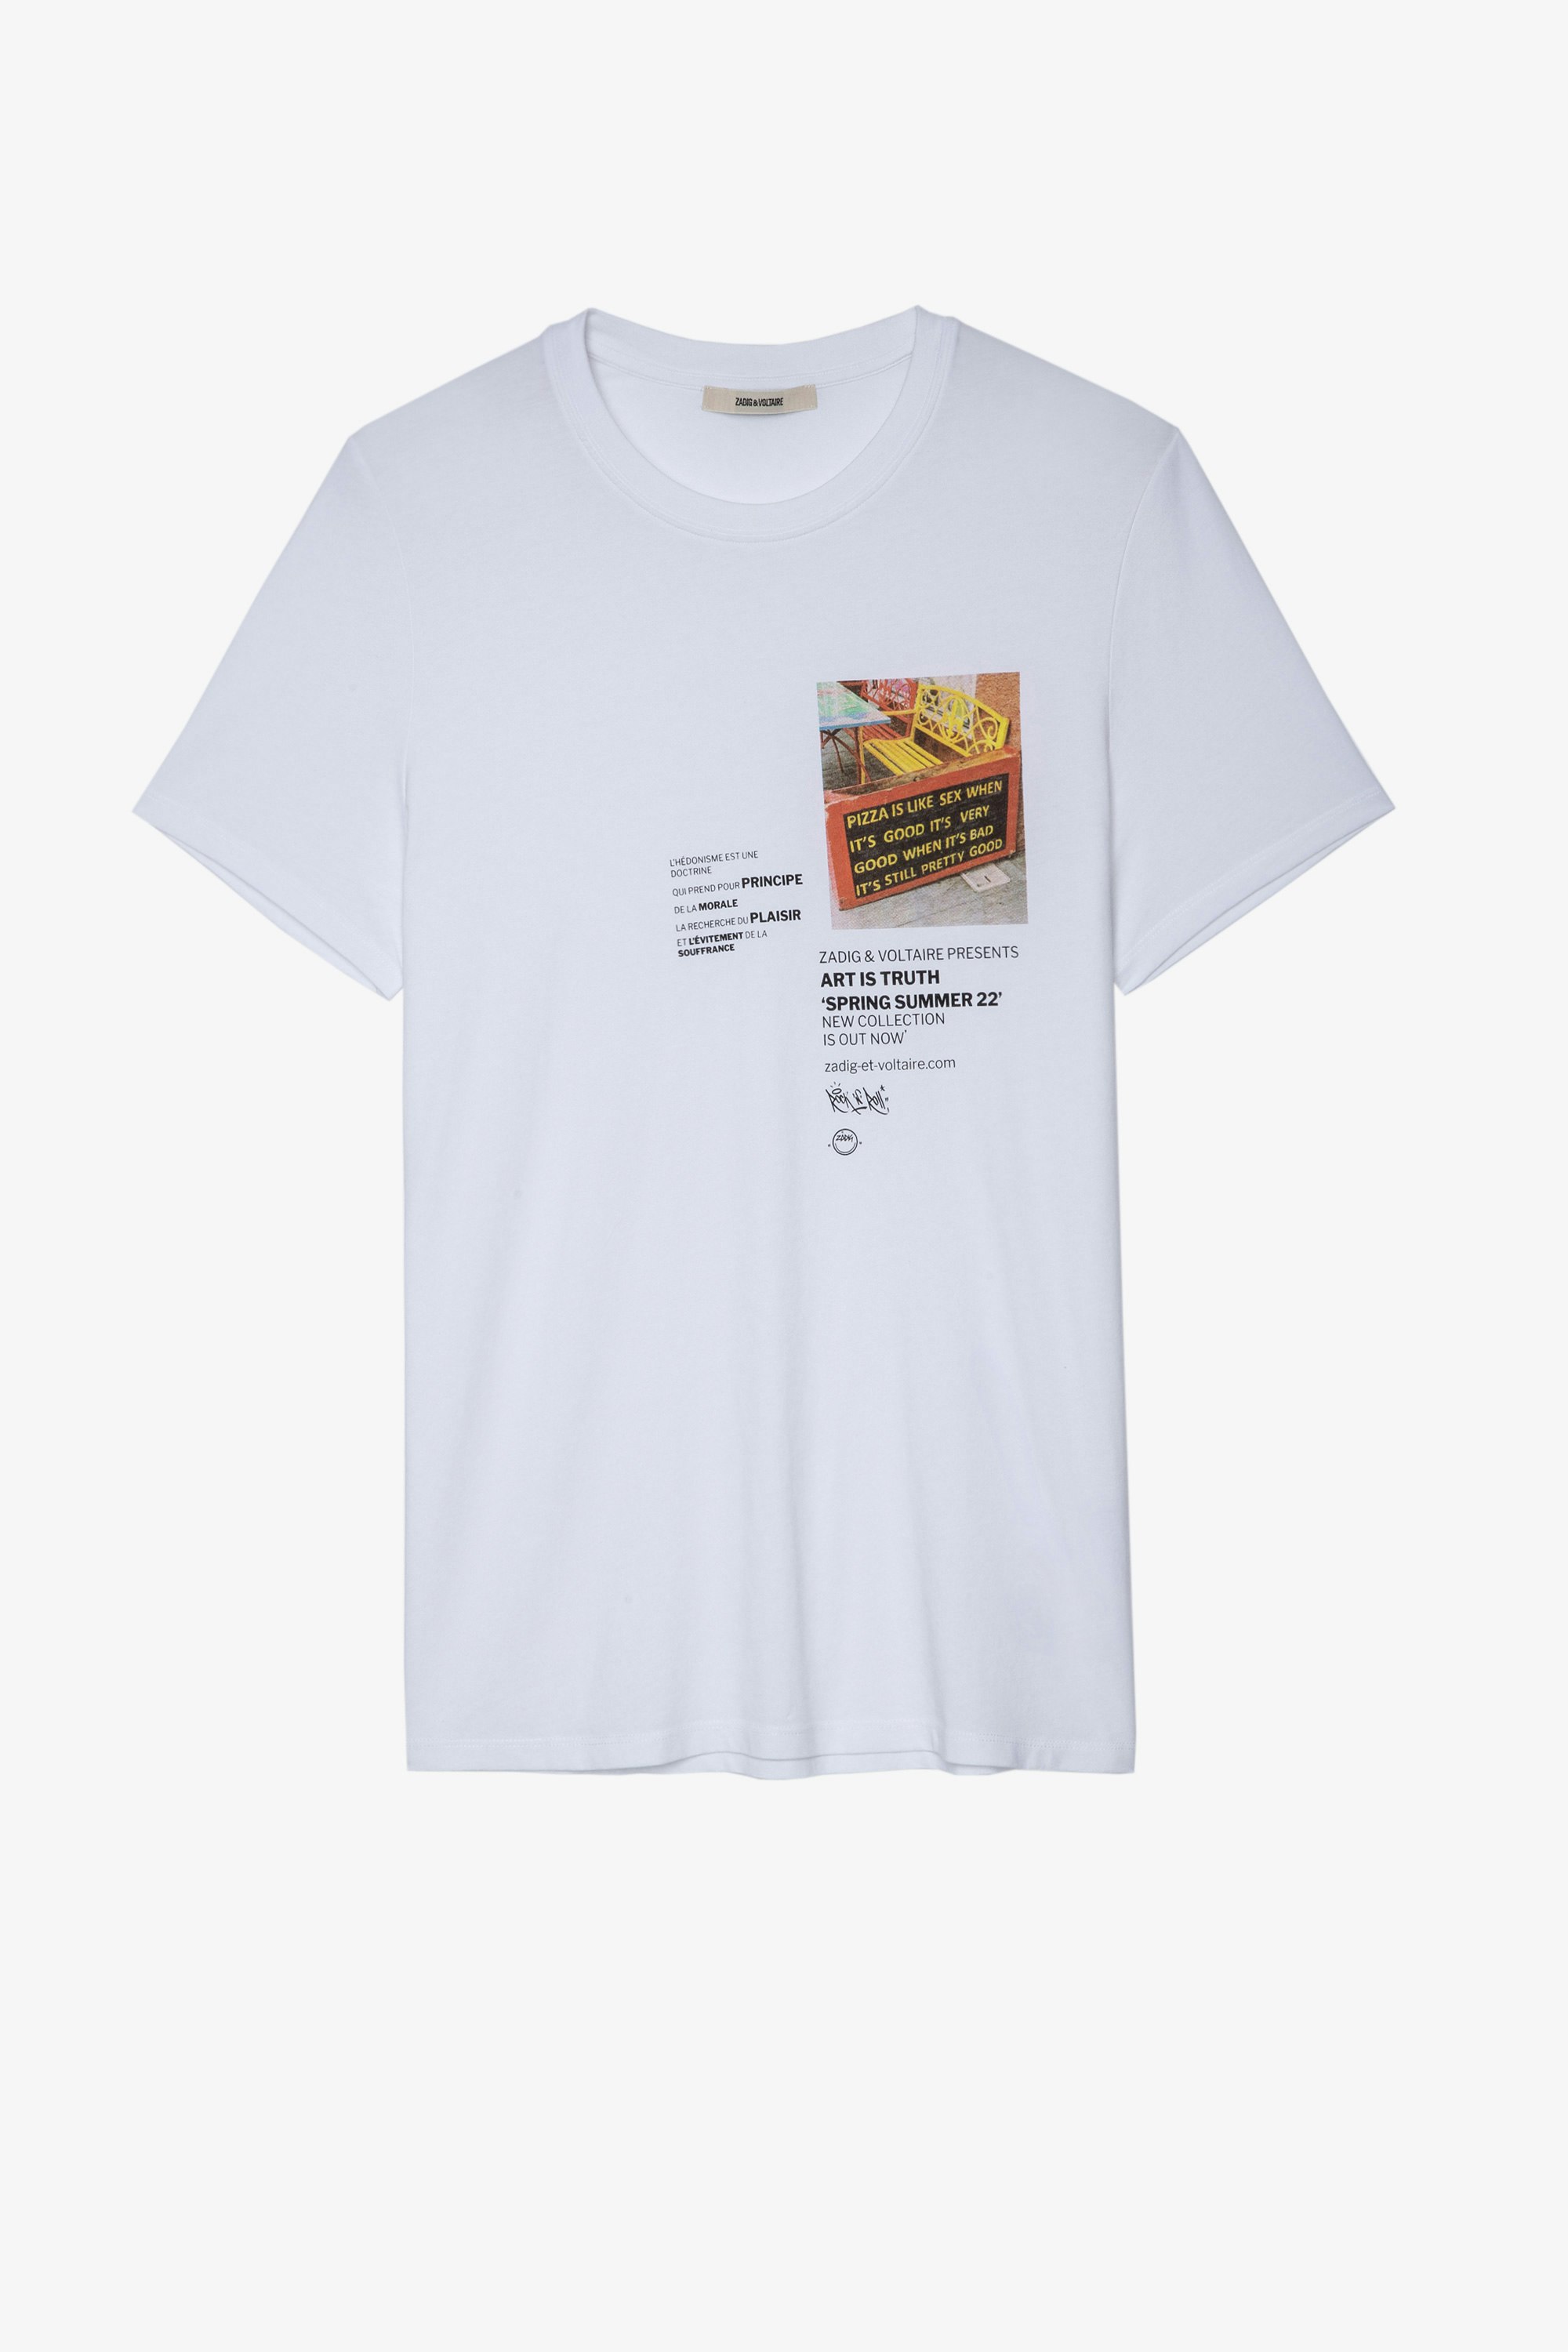 Camiseta Ted Camiseta blanca de algodón de manga corta con impresión fotográfica y de texto para hombre